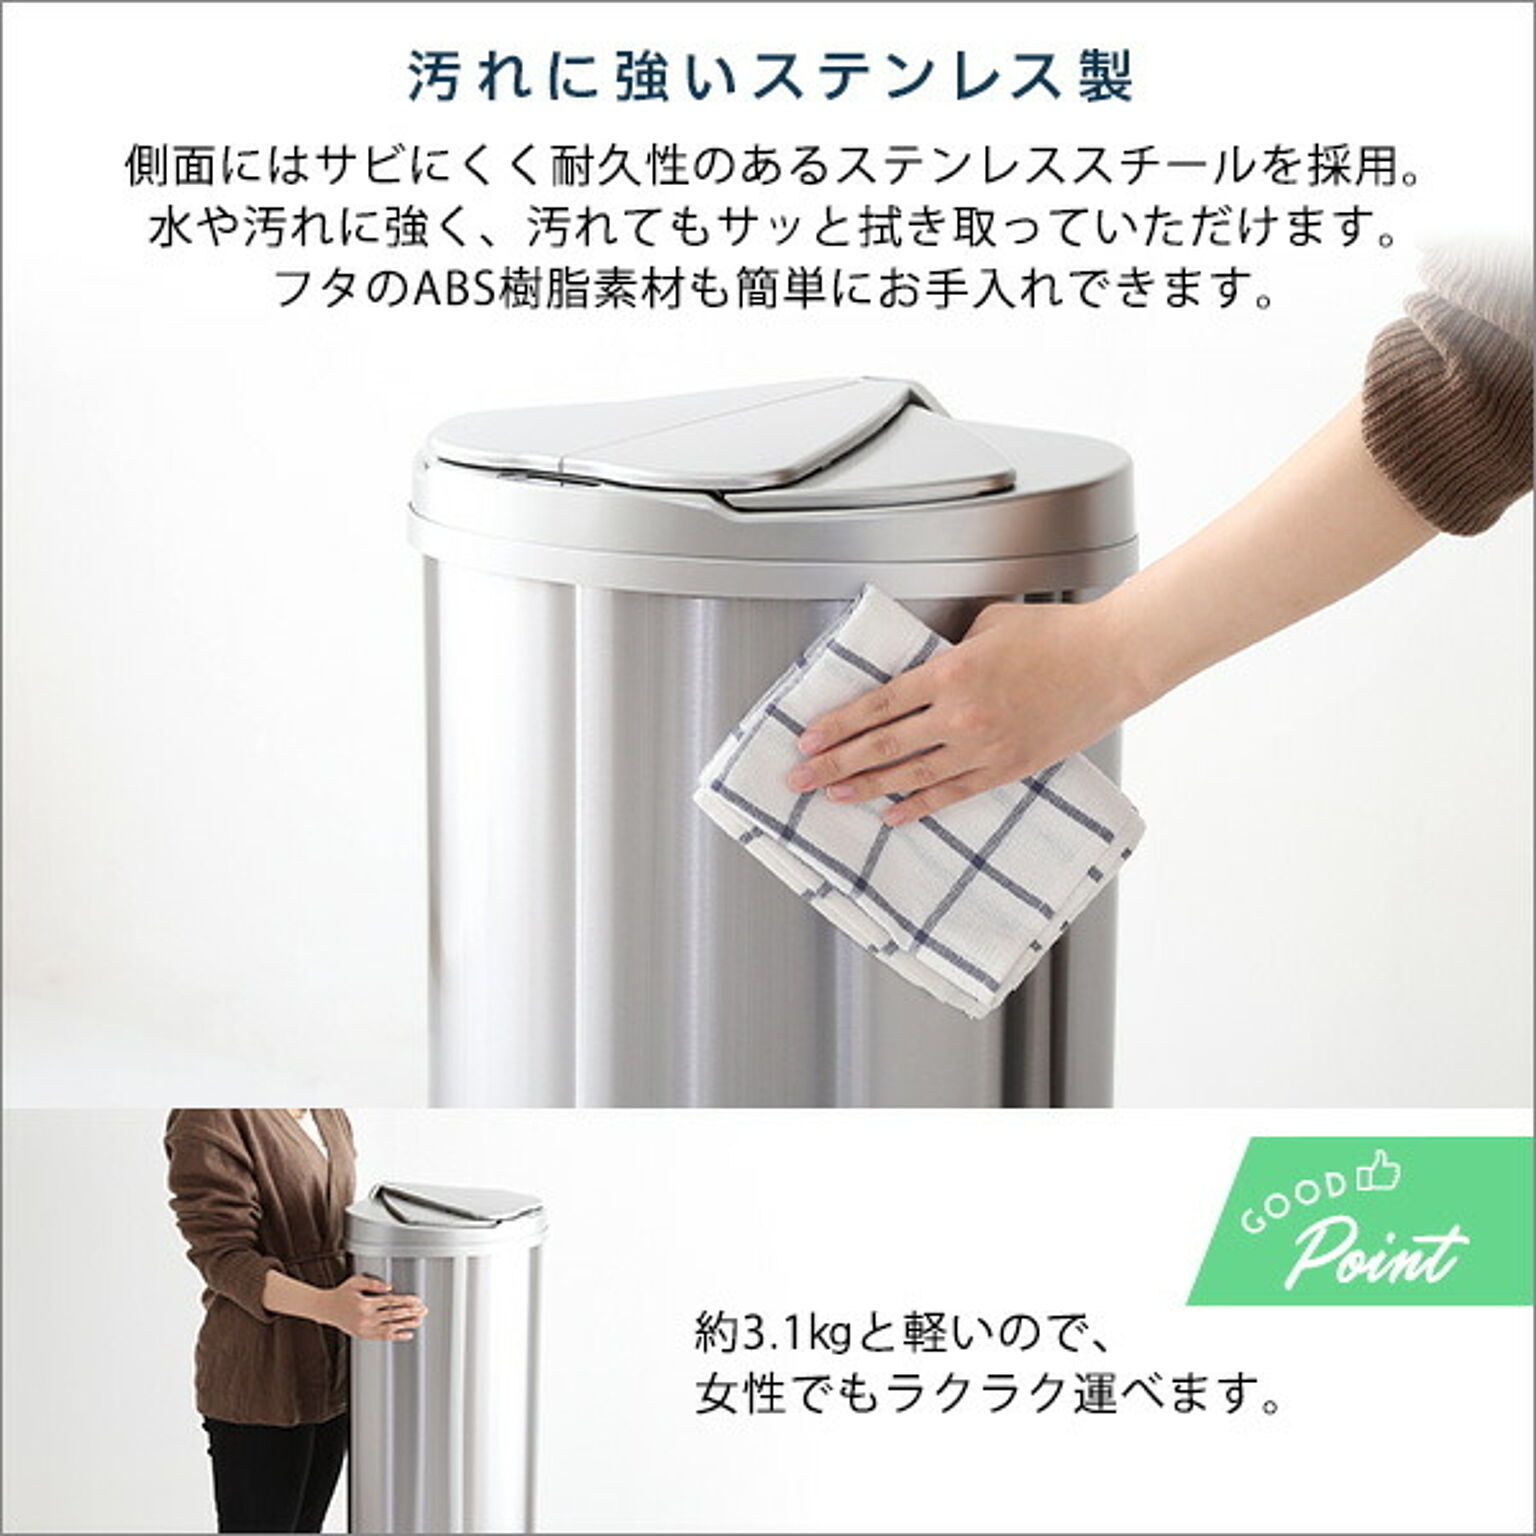 さくらドーム 【ひらけ、ゴミ箱】ZitA CIRCLE ジータ サークル ゴミ箱